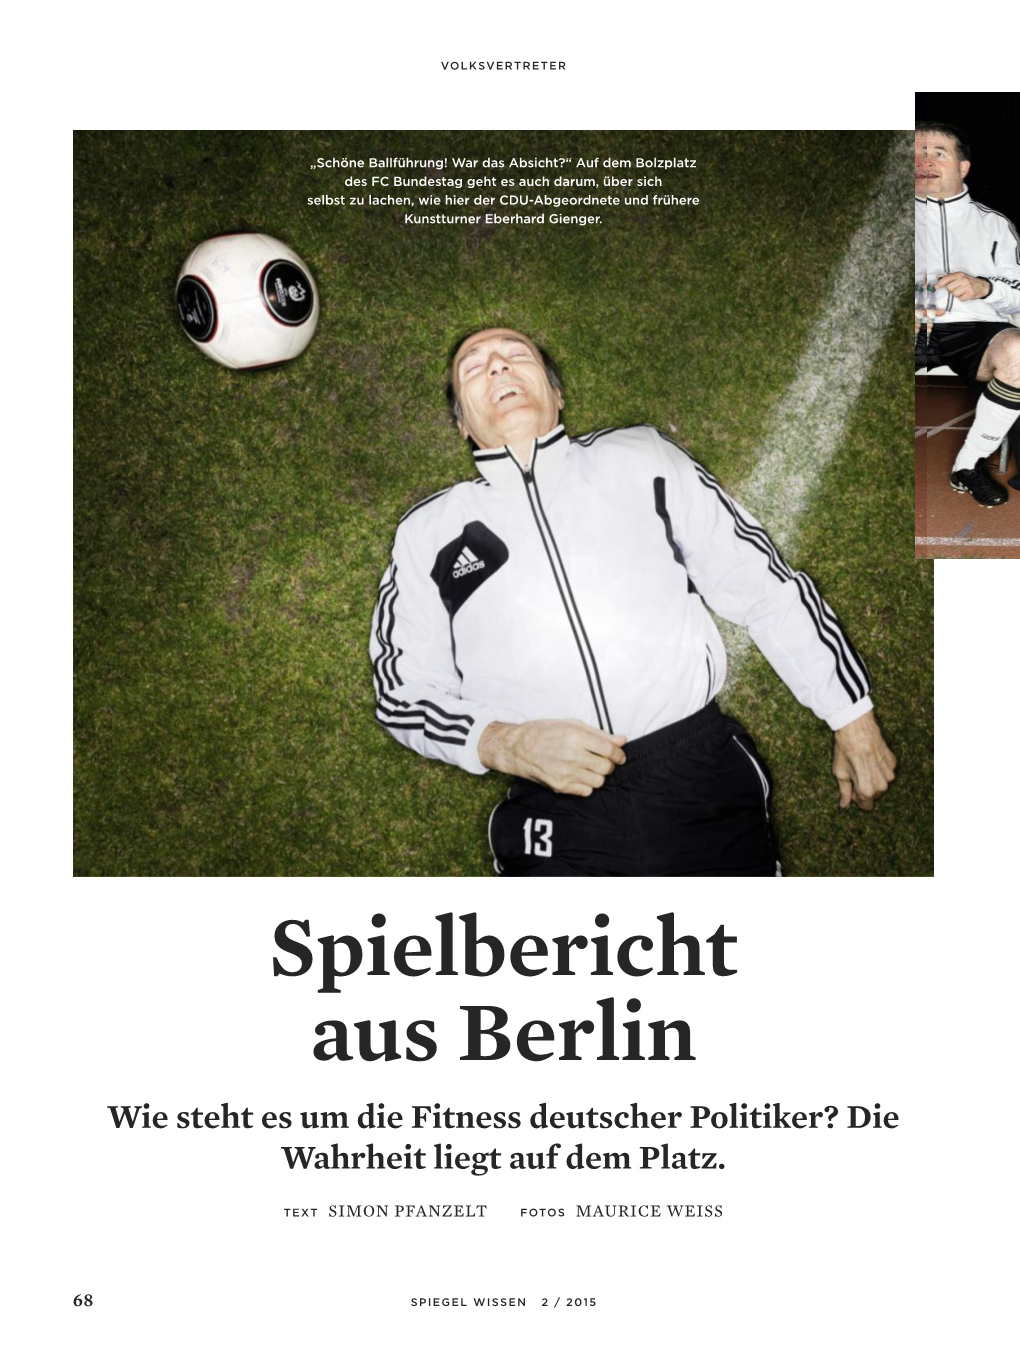 Spielbericht Aus Berlin Wie Steht Es Um Die Fitness Deutscher Politiker? Die Wahrheit Liegt Auf Dem Platz